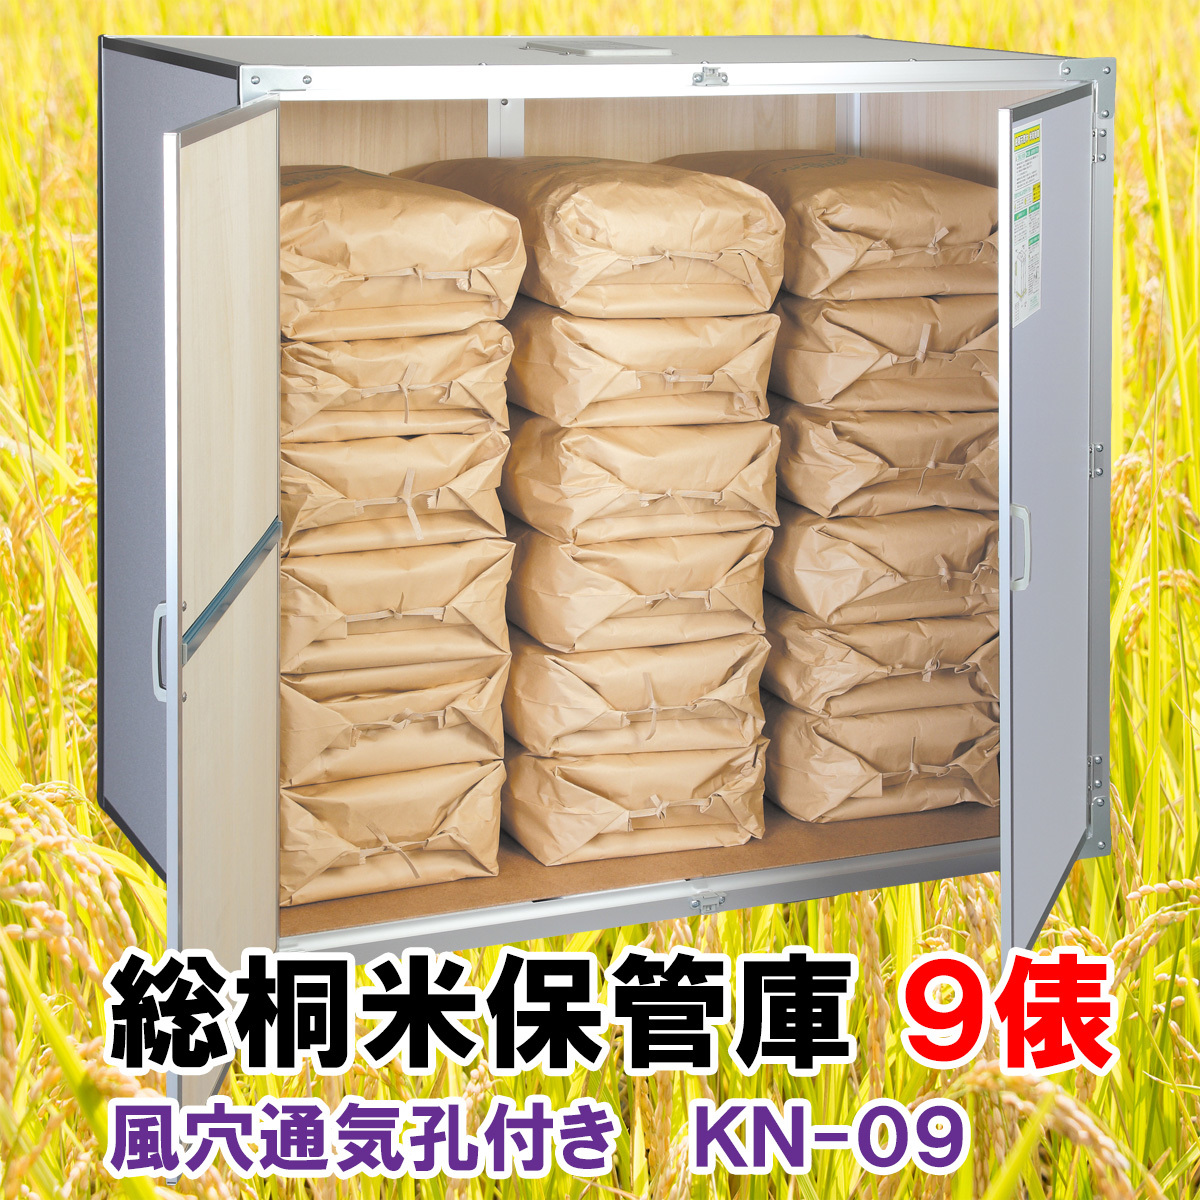  общий . рис шкаф для хранения ( рис шкаф )KN-09 9. для (30kg пакет ×18) способ дыра вентиляция . есть сделано в Японии река сторона завод неочищенный рис шкаф для хранения влажность плесень меры стратегический запас рис 